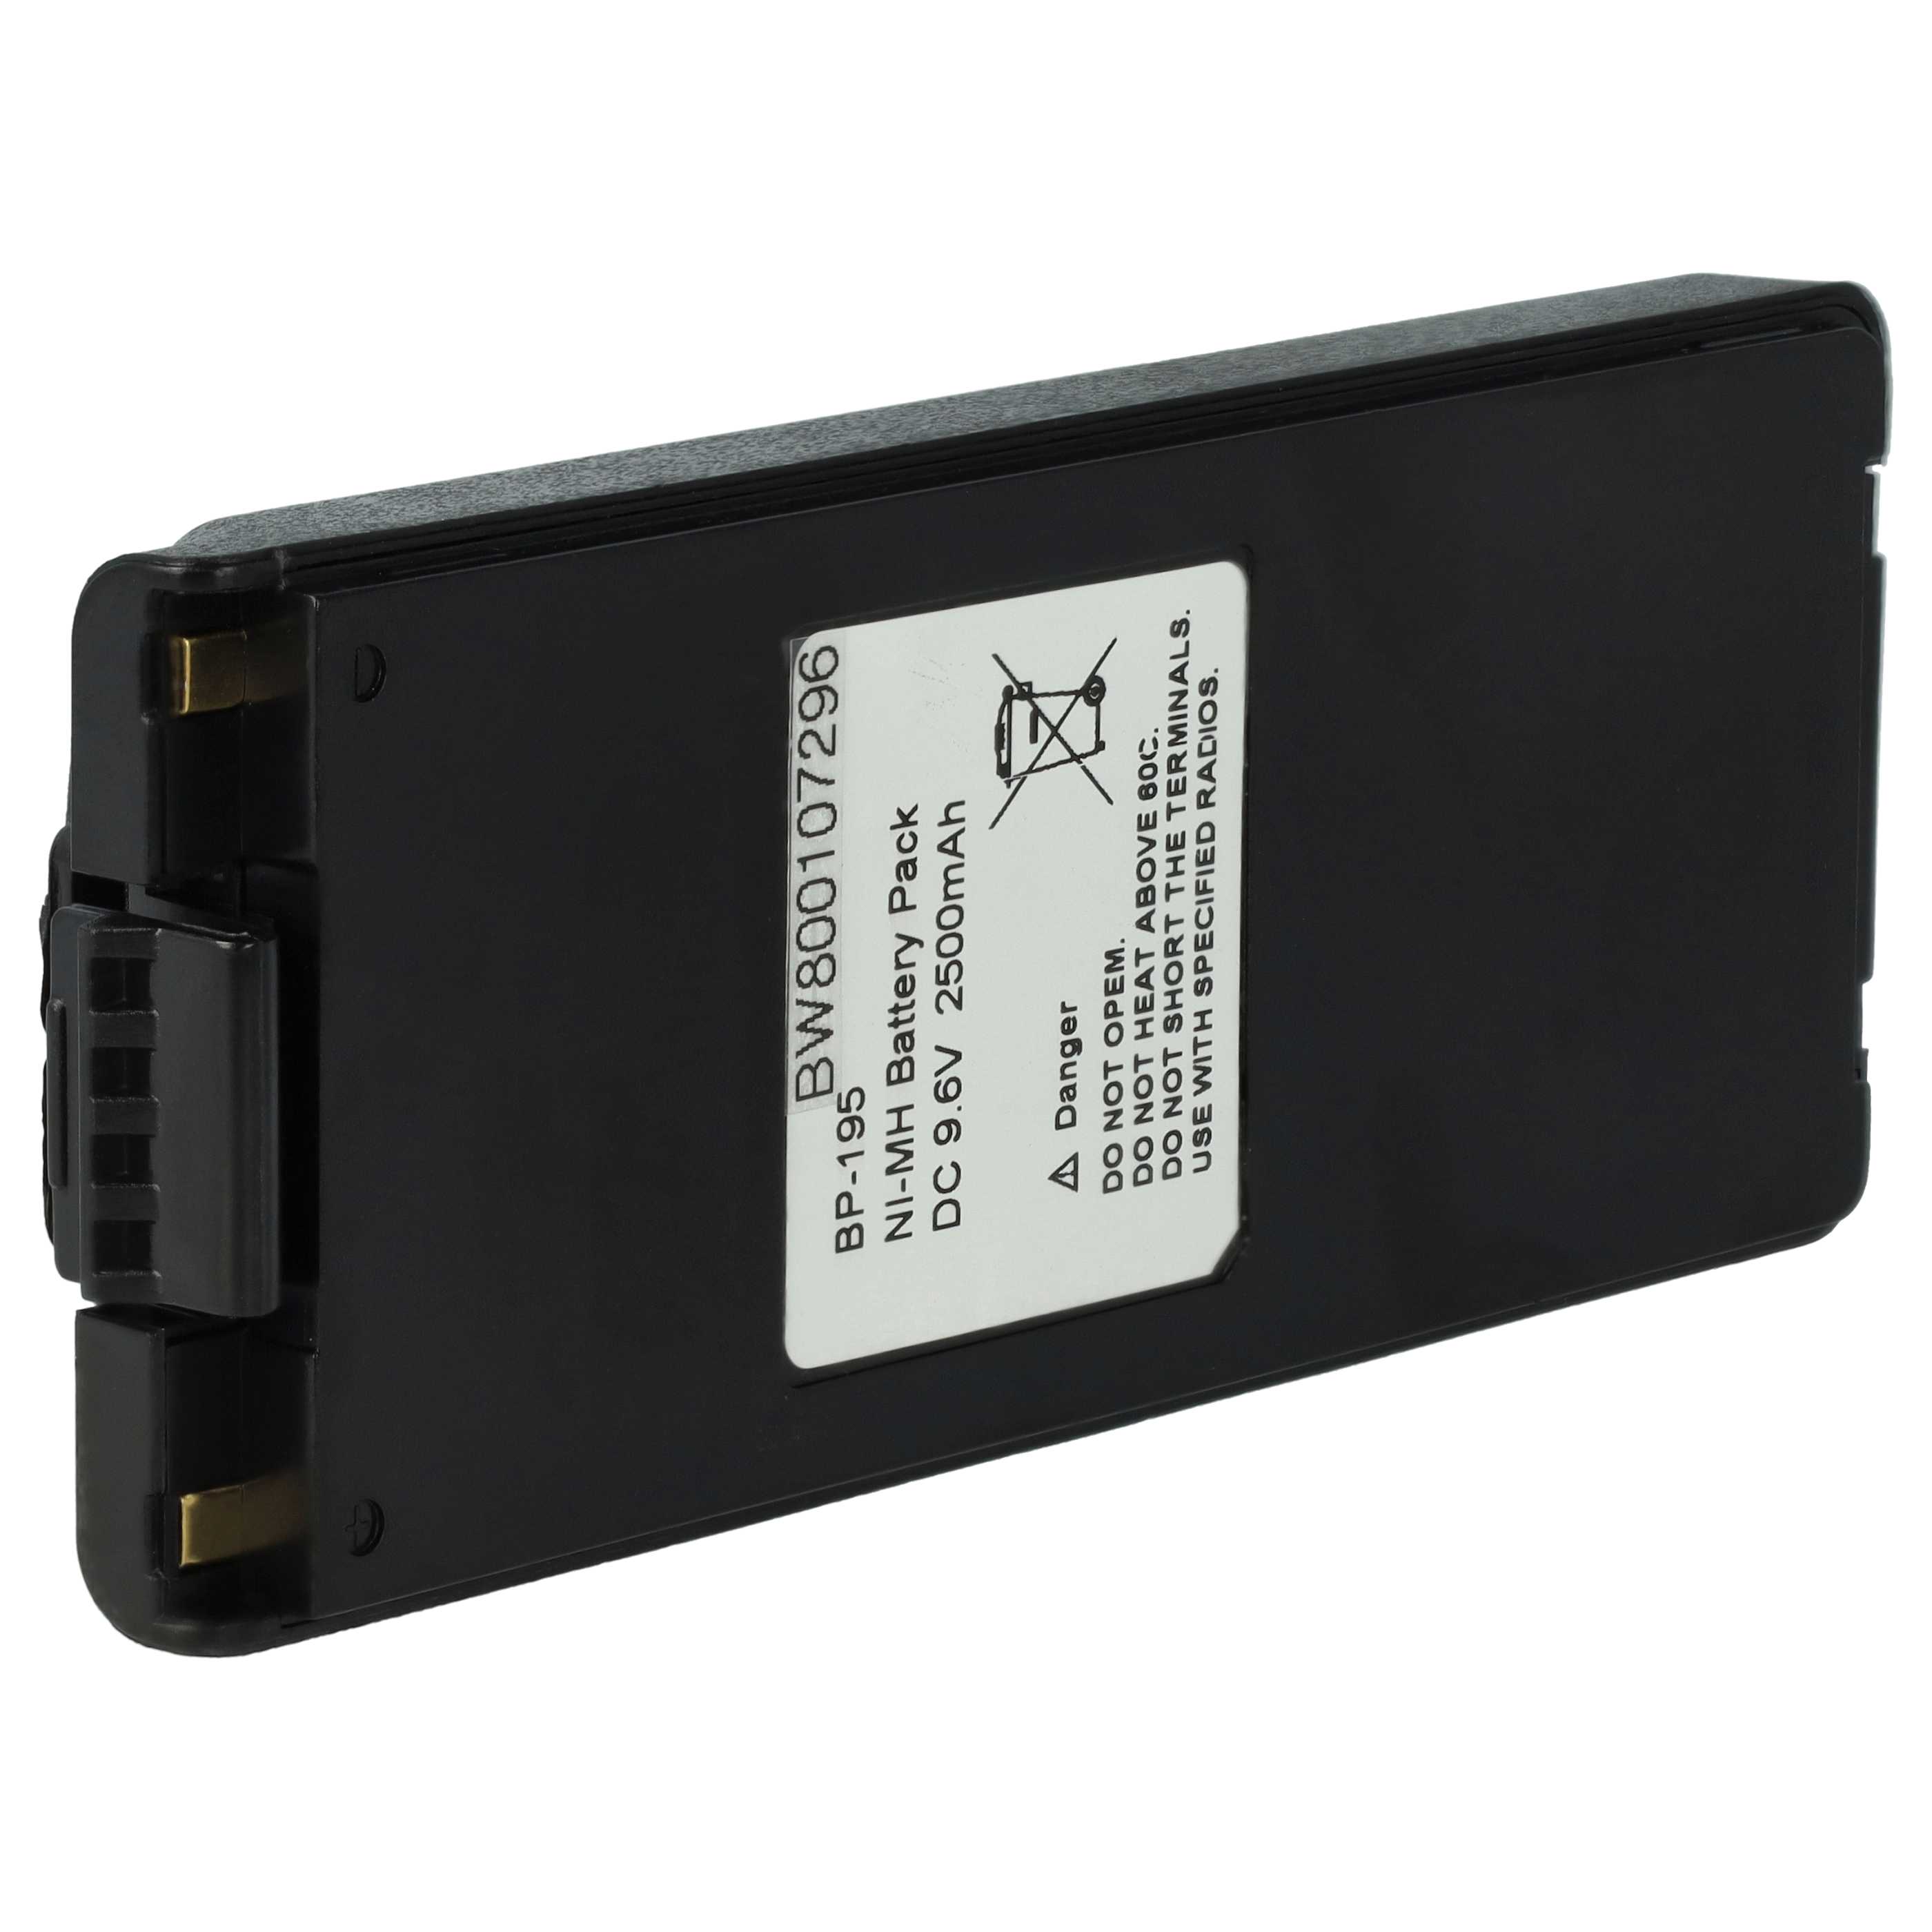 Batería reemplaza Icom BP-195, BP-196H, BP-196 para radio, walkie-talkie Icom - 2500 mAh 9,6 V NiMH con clip